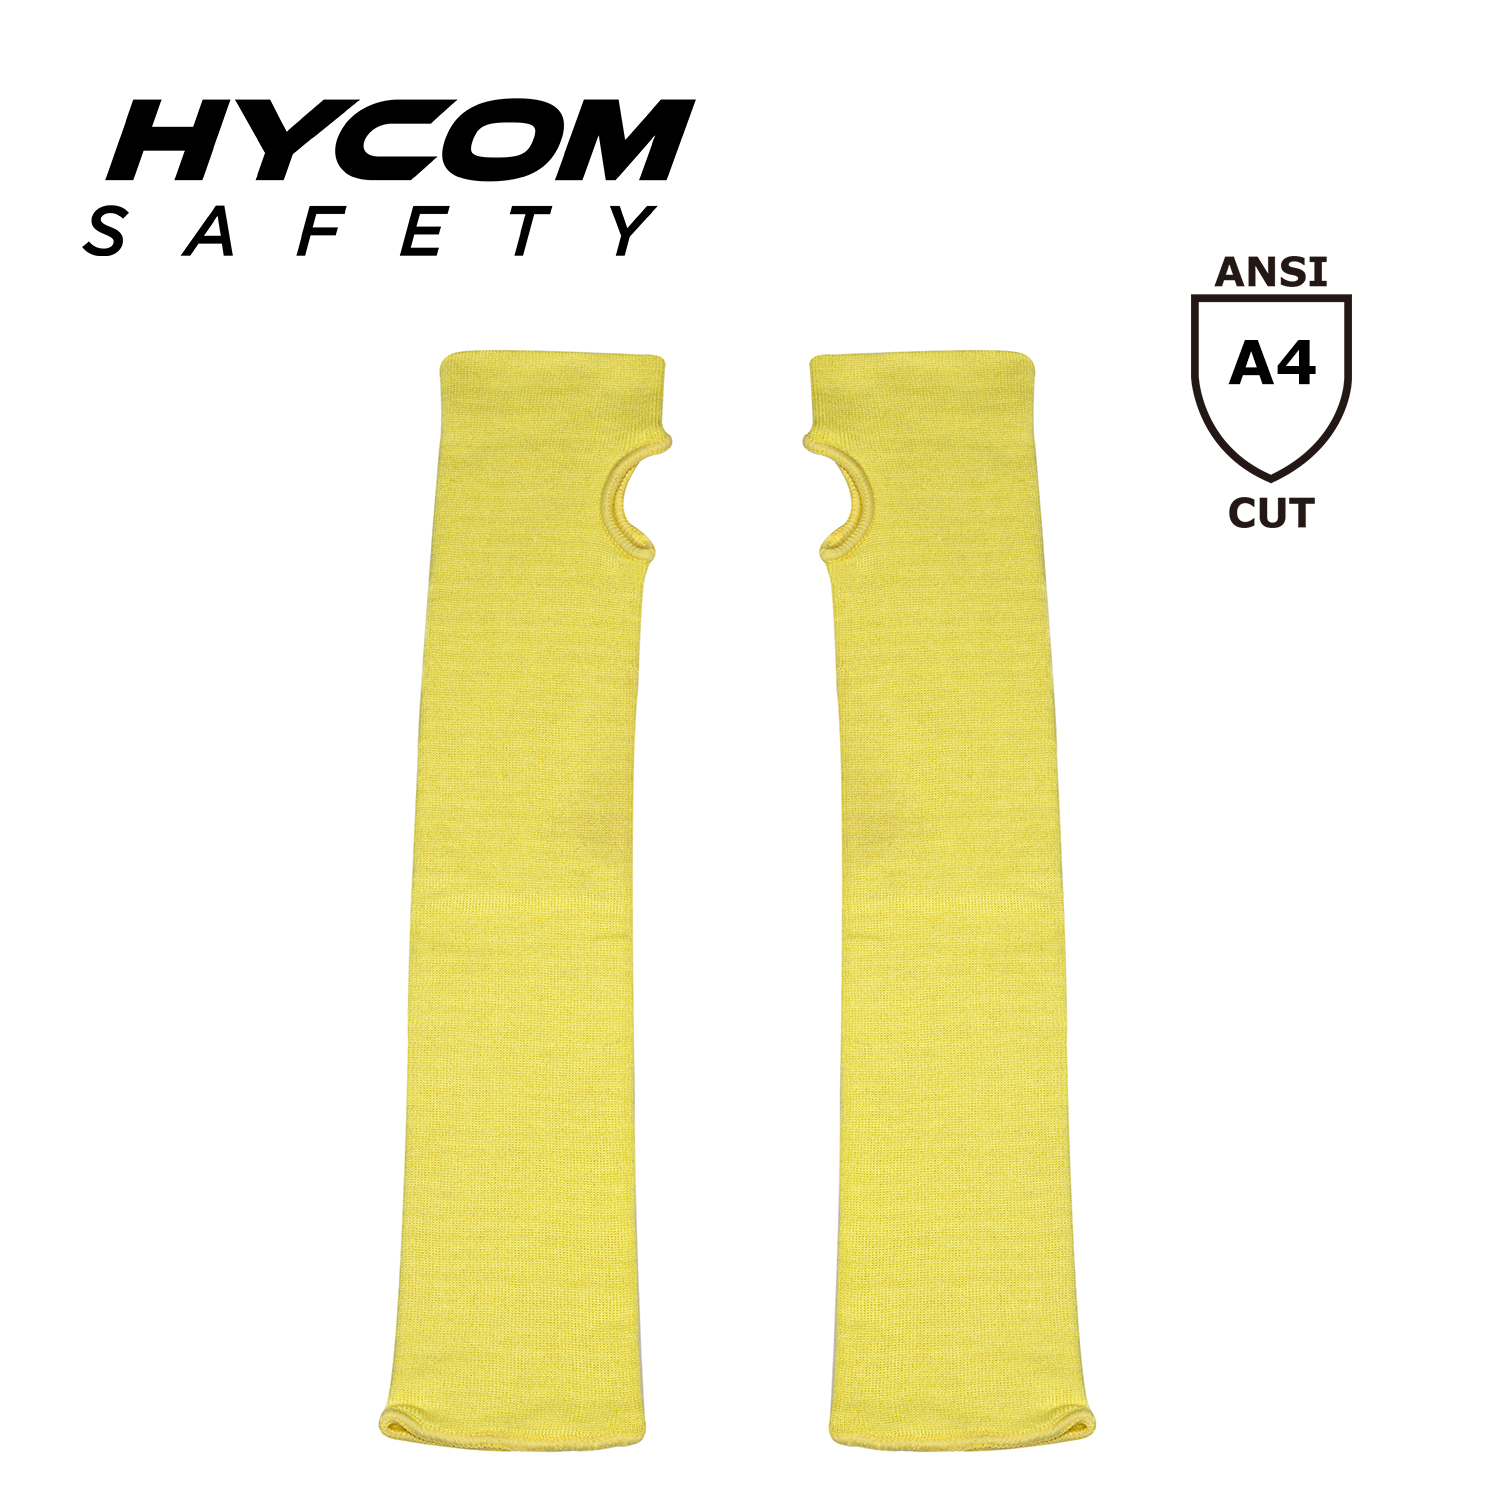 HYCOM Manga resistente al calor contra cortes de nivel D Mangas de seguridad para el trabajo con ranura para el pulgar